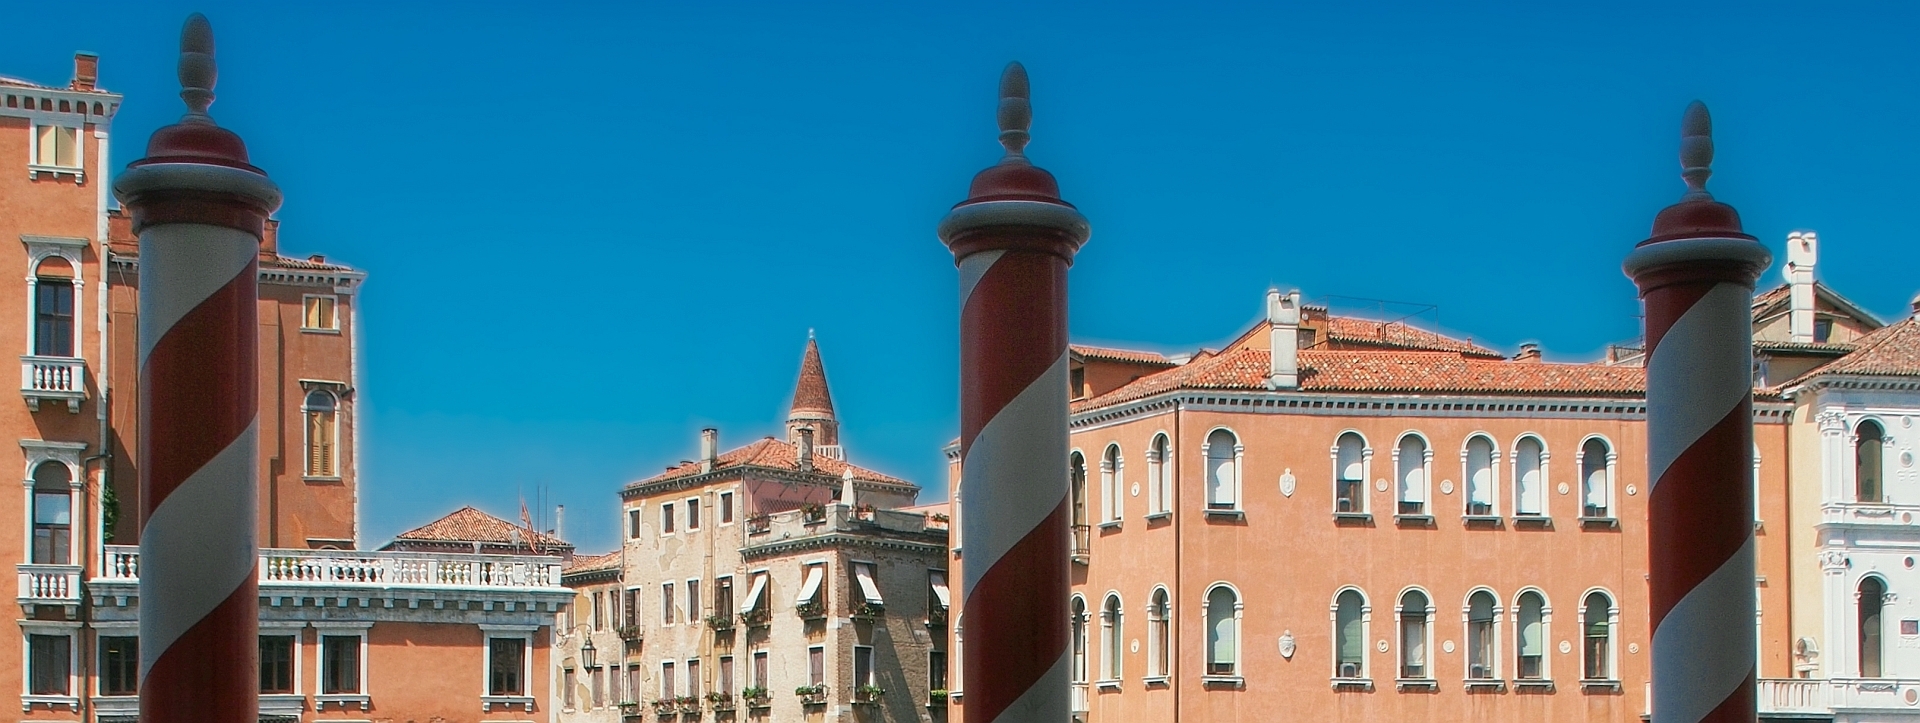 Hier im Bild sieht man sowohl die (fiktive) Terrasse von Commissario Brunetti wie auch die (reale) Terrasse des deutschen Studienzentrums in Venedig